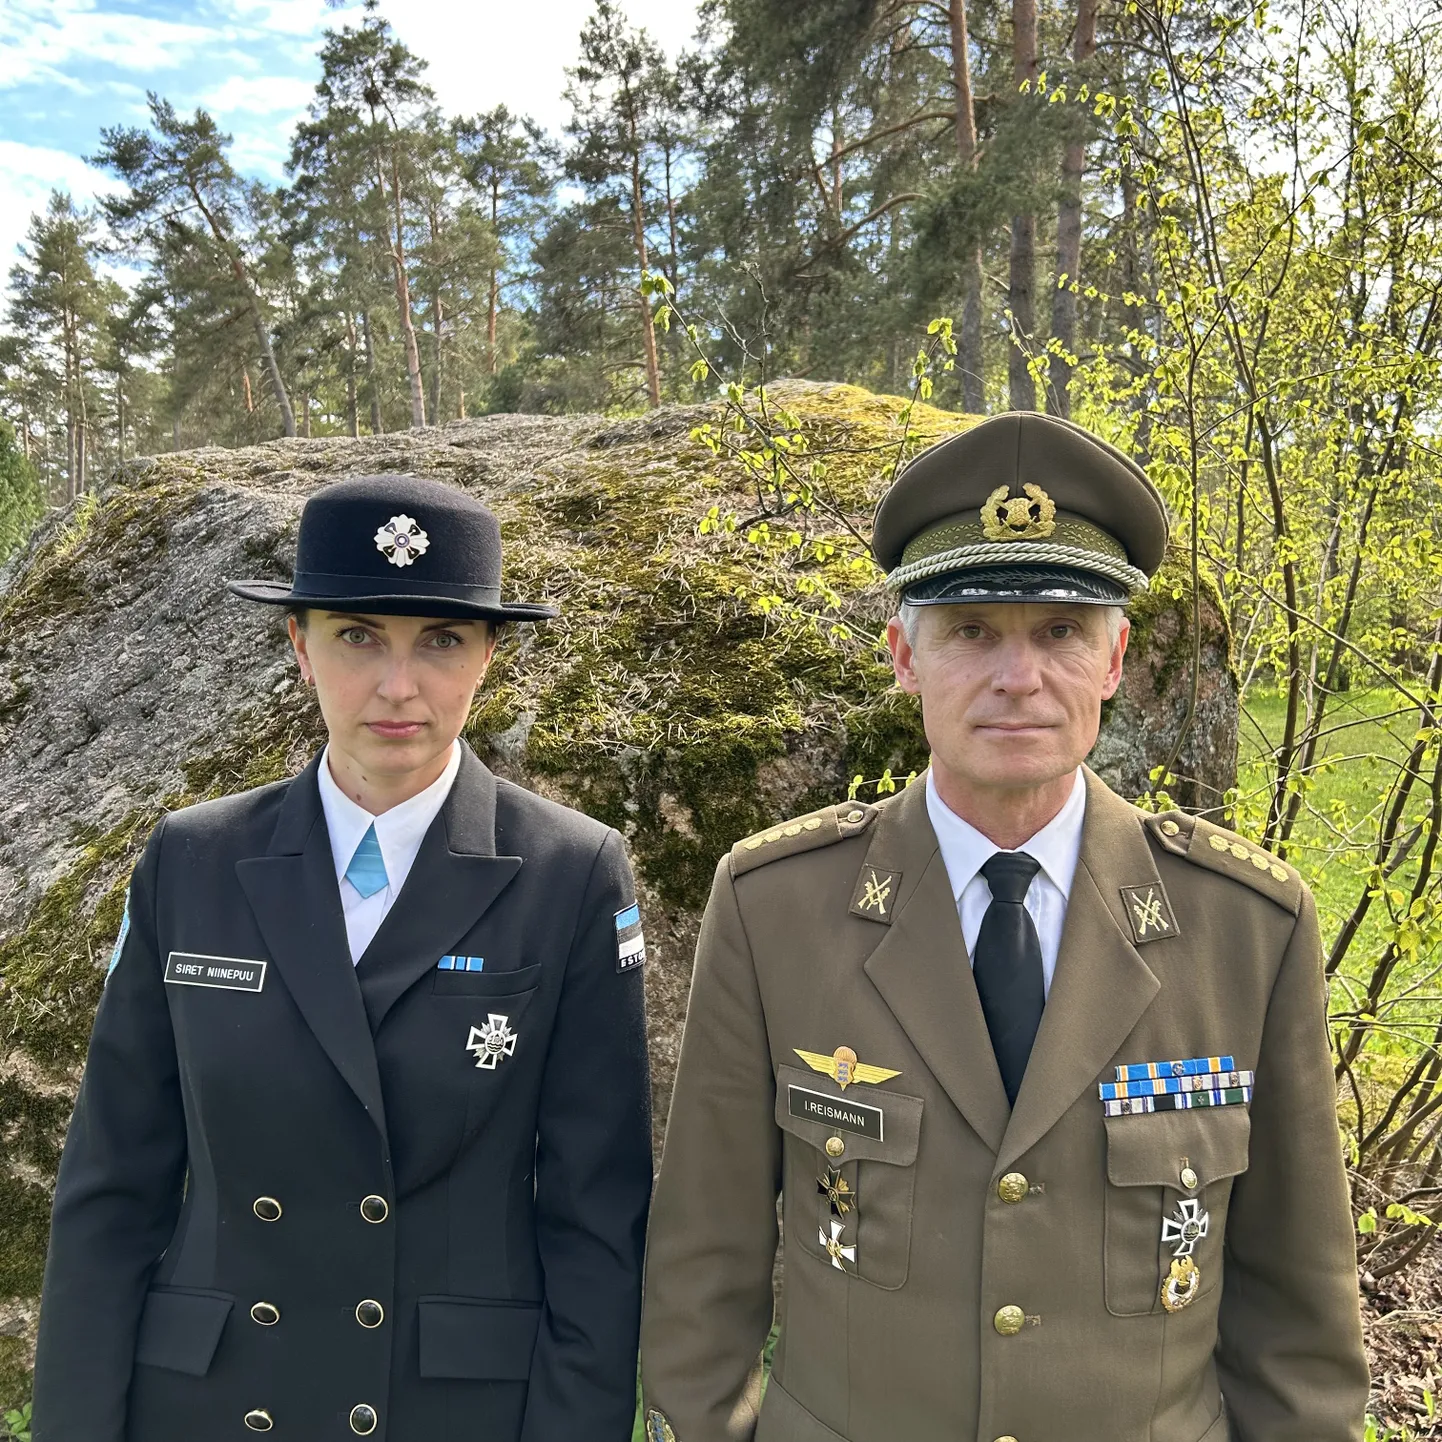 Võidupüha paraad on tänavu Narvas ja sealt toovad võidutule Järvamaale kaitseliitlane Indrek Reismann ja naiskodukaitsja Siret Niinepuu.